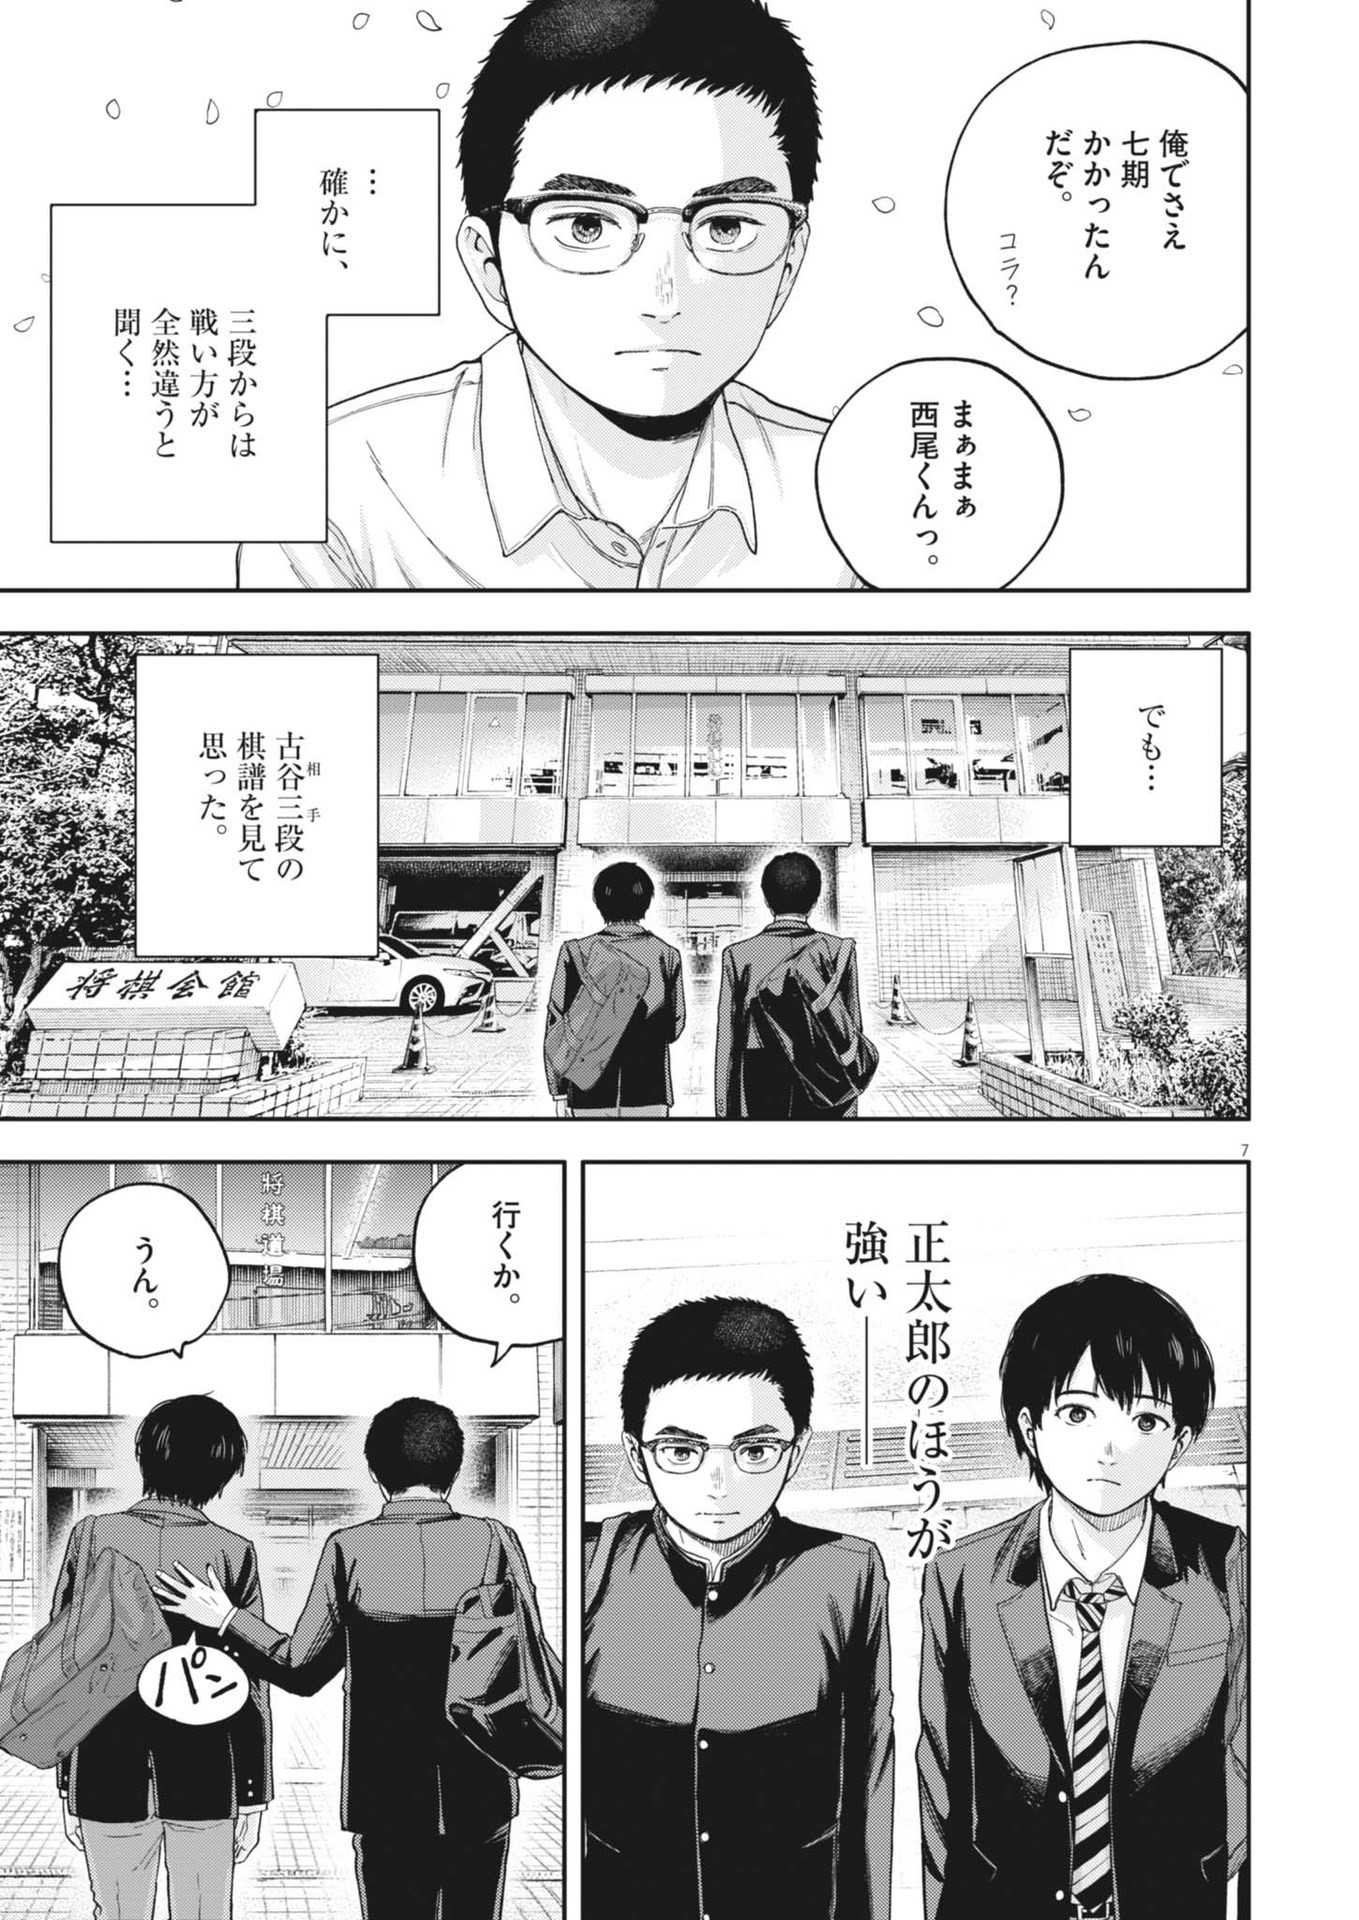 Yumenashi-sensei no Shinroshidou - Chapter 28 - Page 7